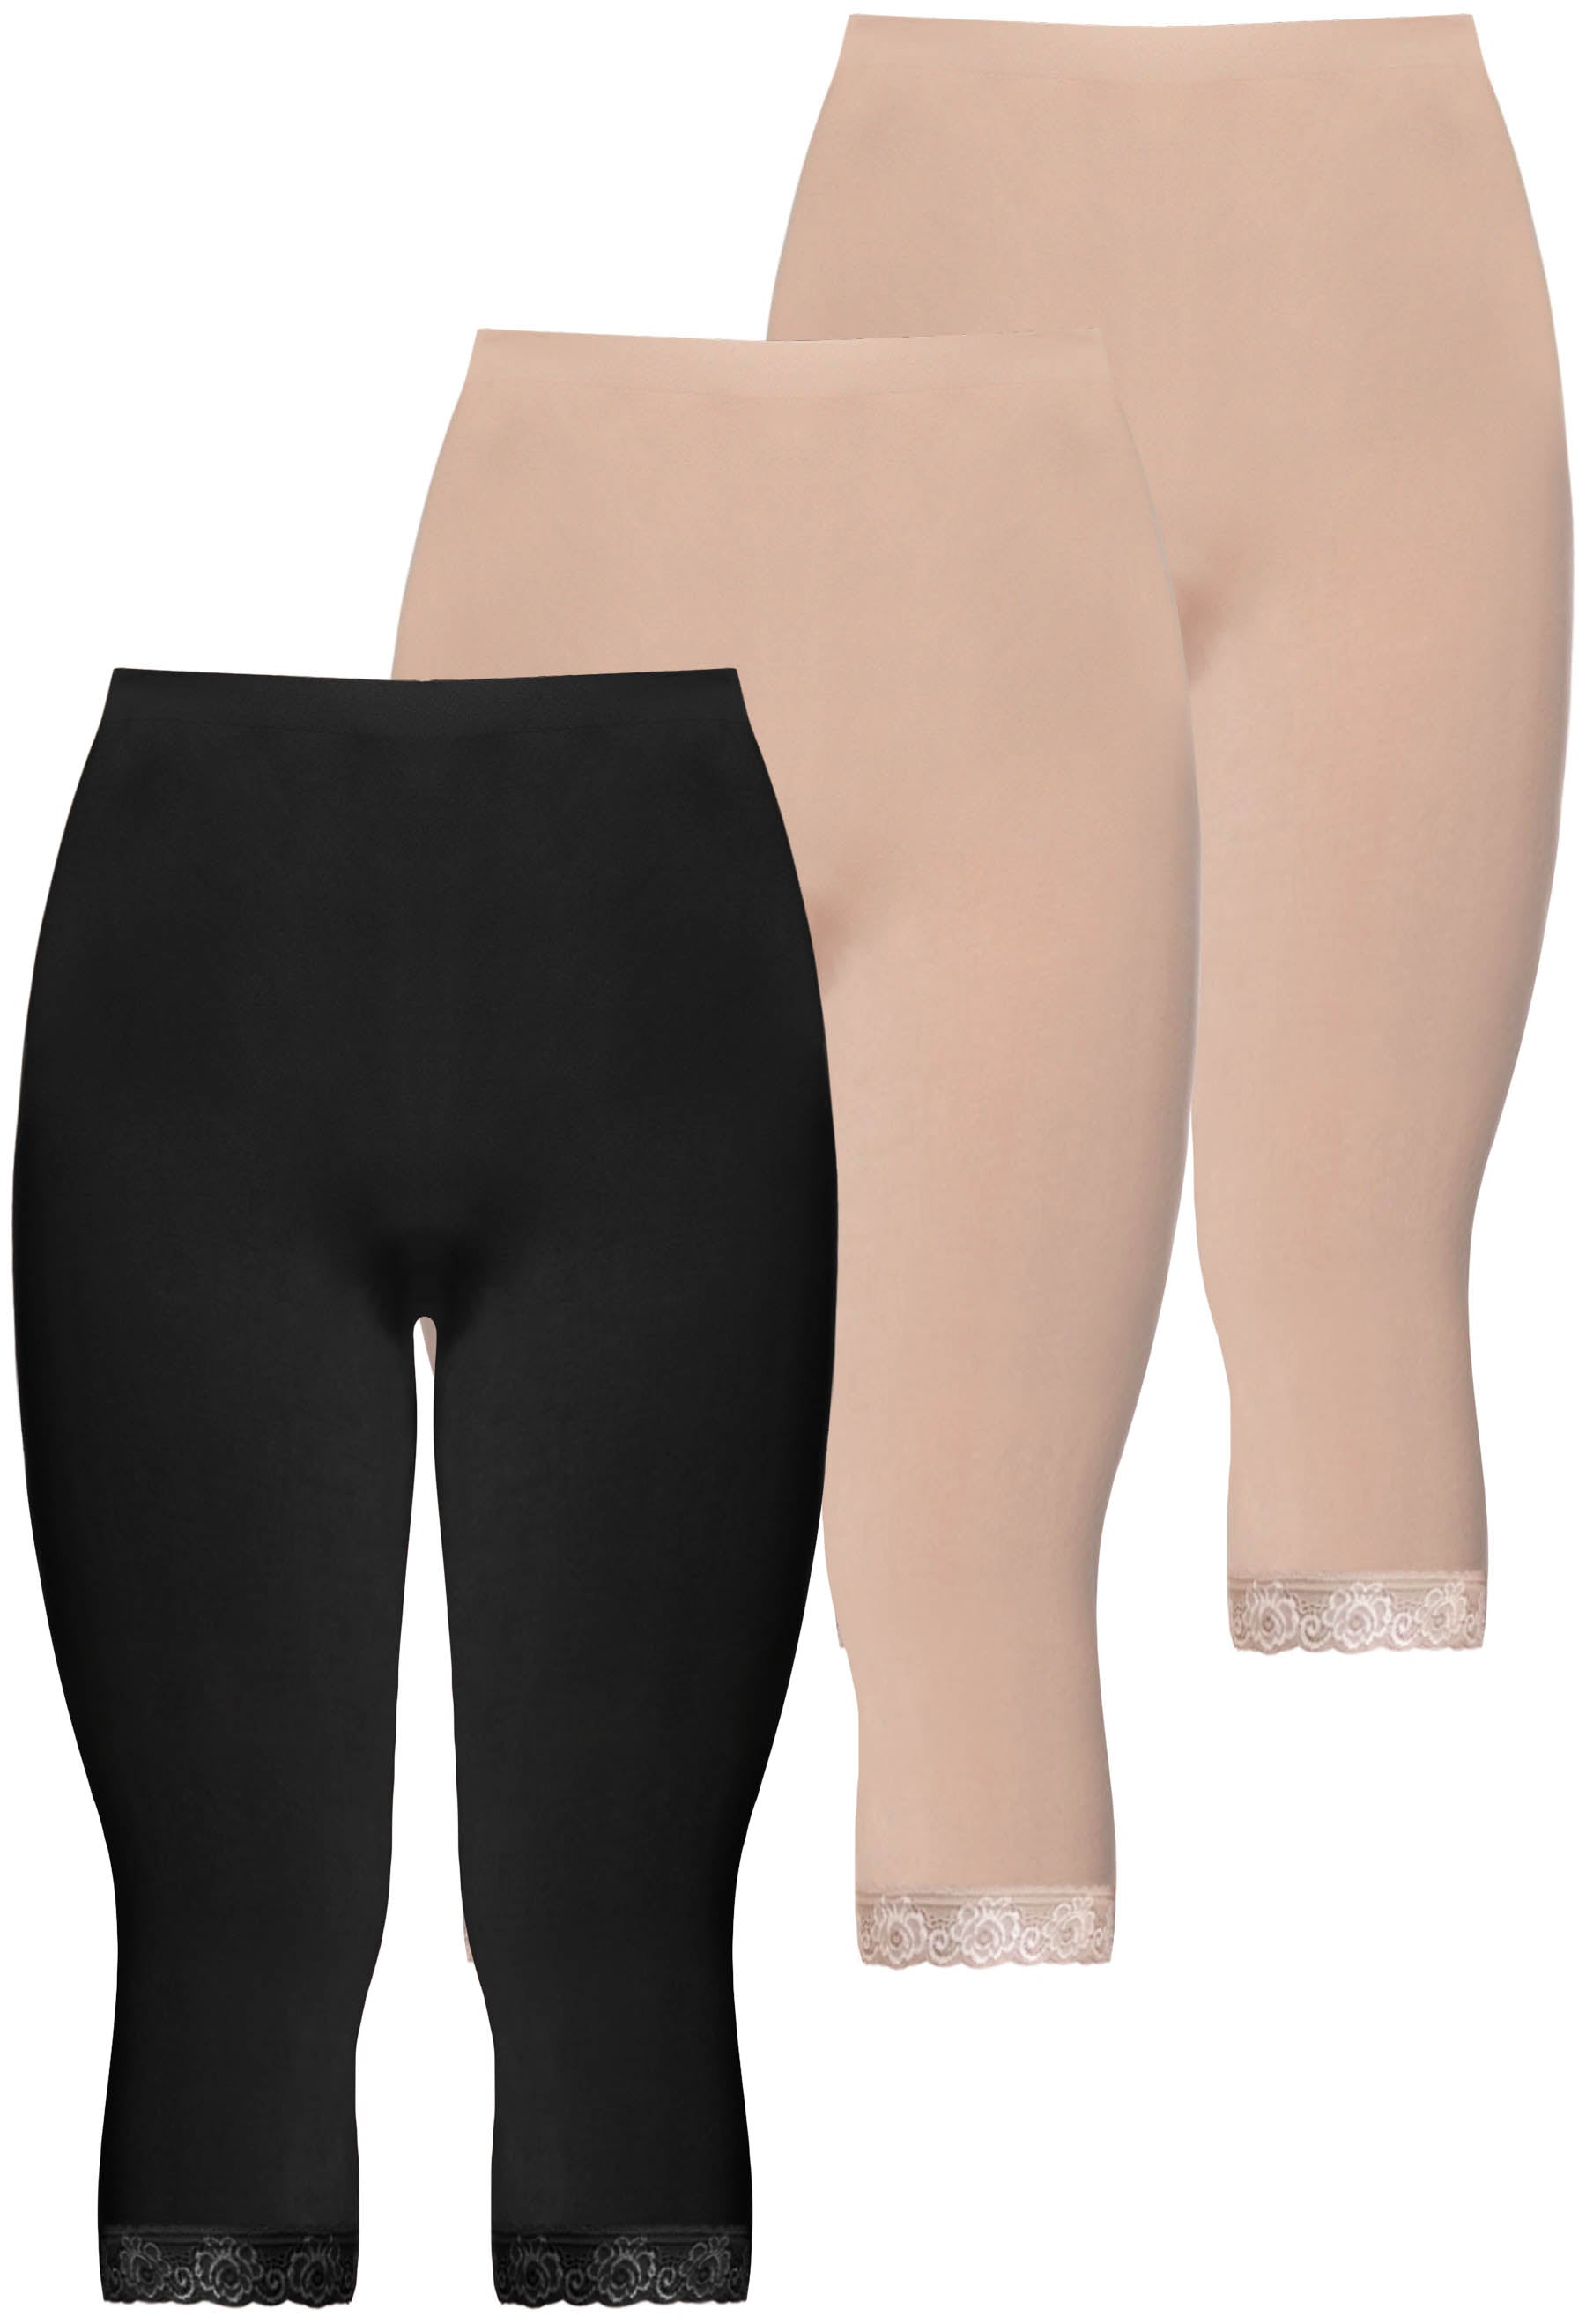 Buy MYO Capri for Women | Plain Capri for Girls | 3/4th Pants for Women |  Cotton Capri Women | 3/4 Leggings for Women | Three Fourth Pants for Women  Combo Pack of 4 at Amazon.in